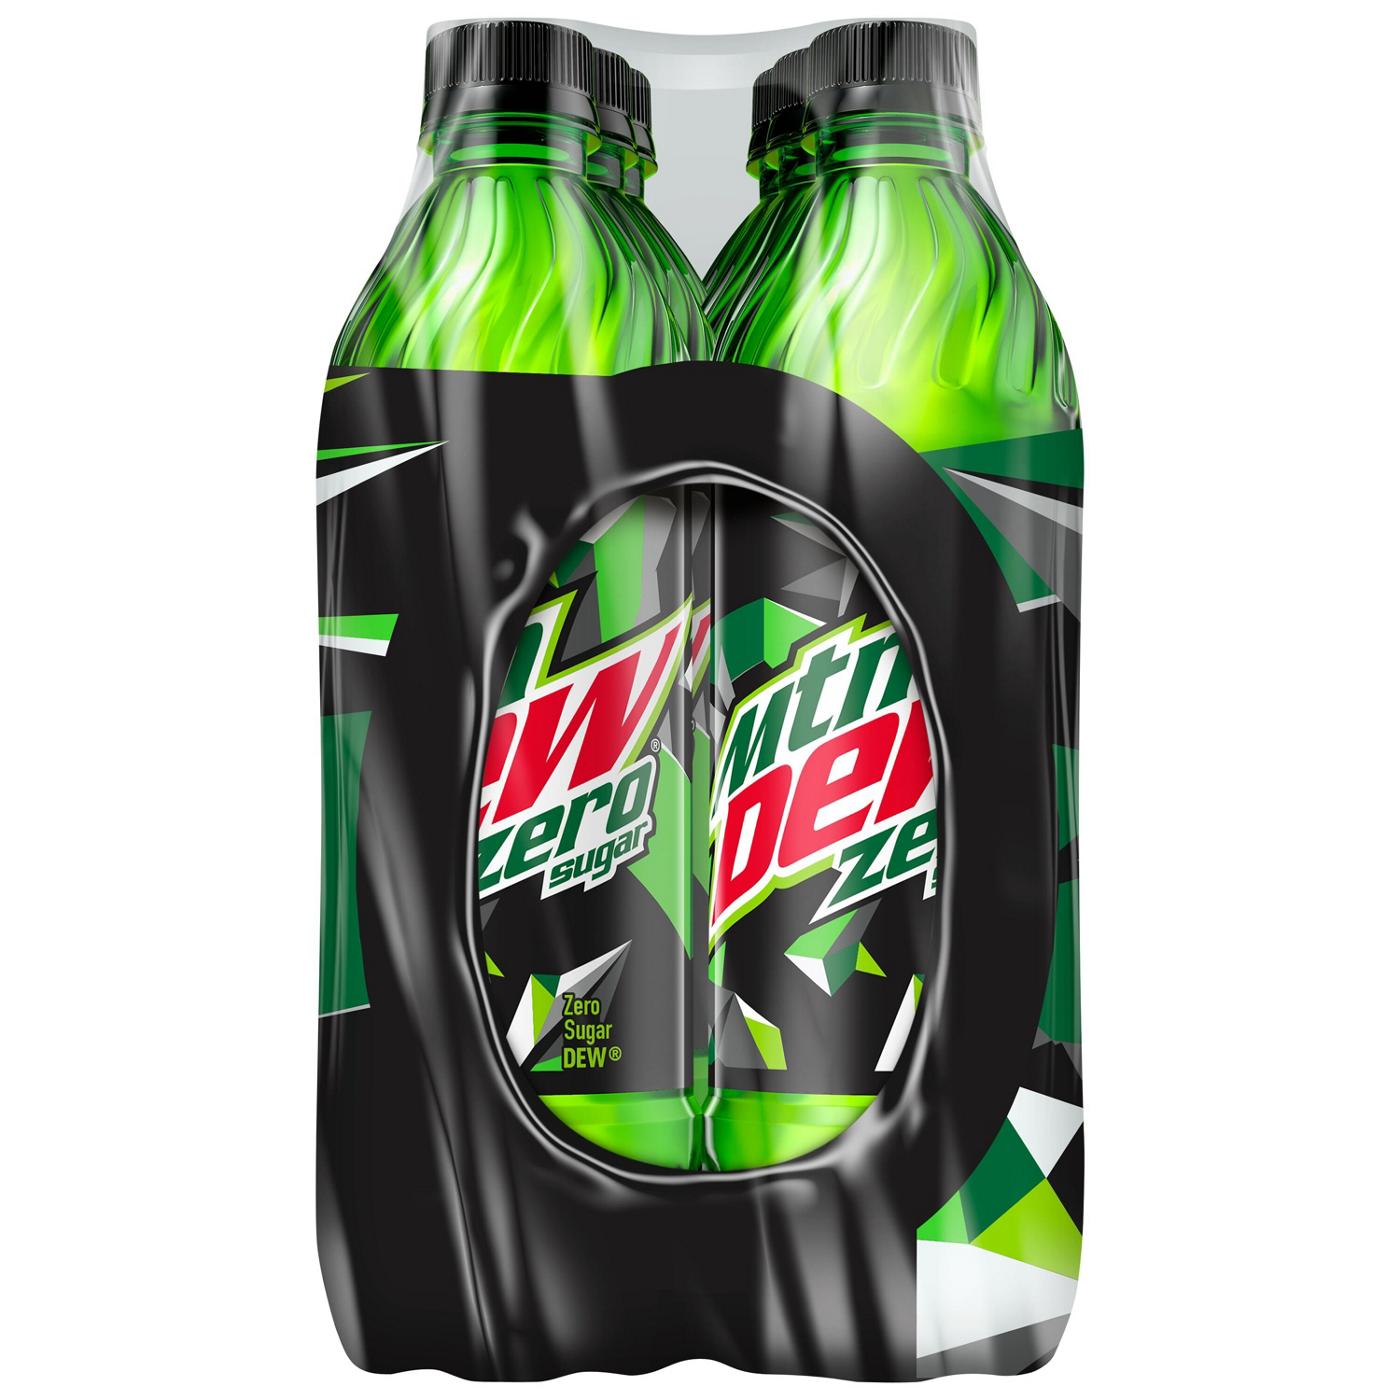 Mountain Dew Zero Sugar Soda 16.9 oz Bottles; image 2 of 4